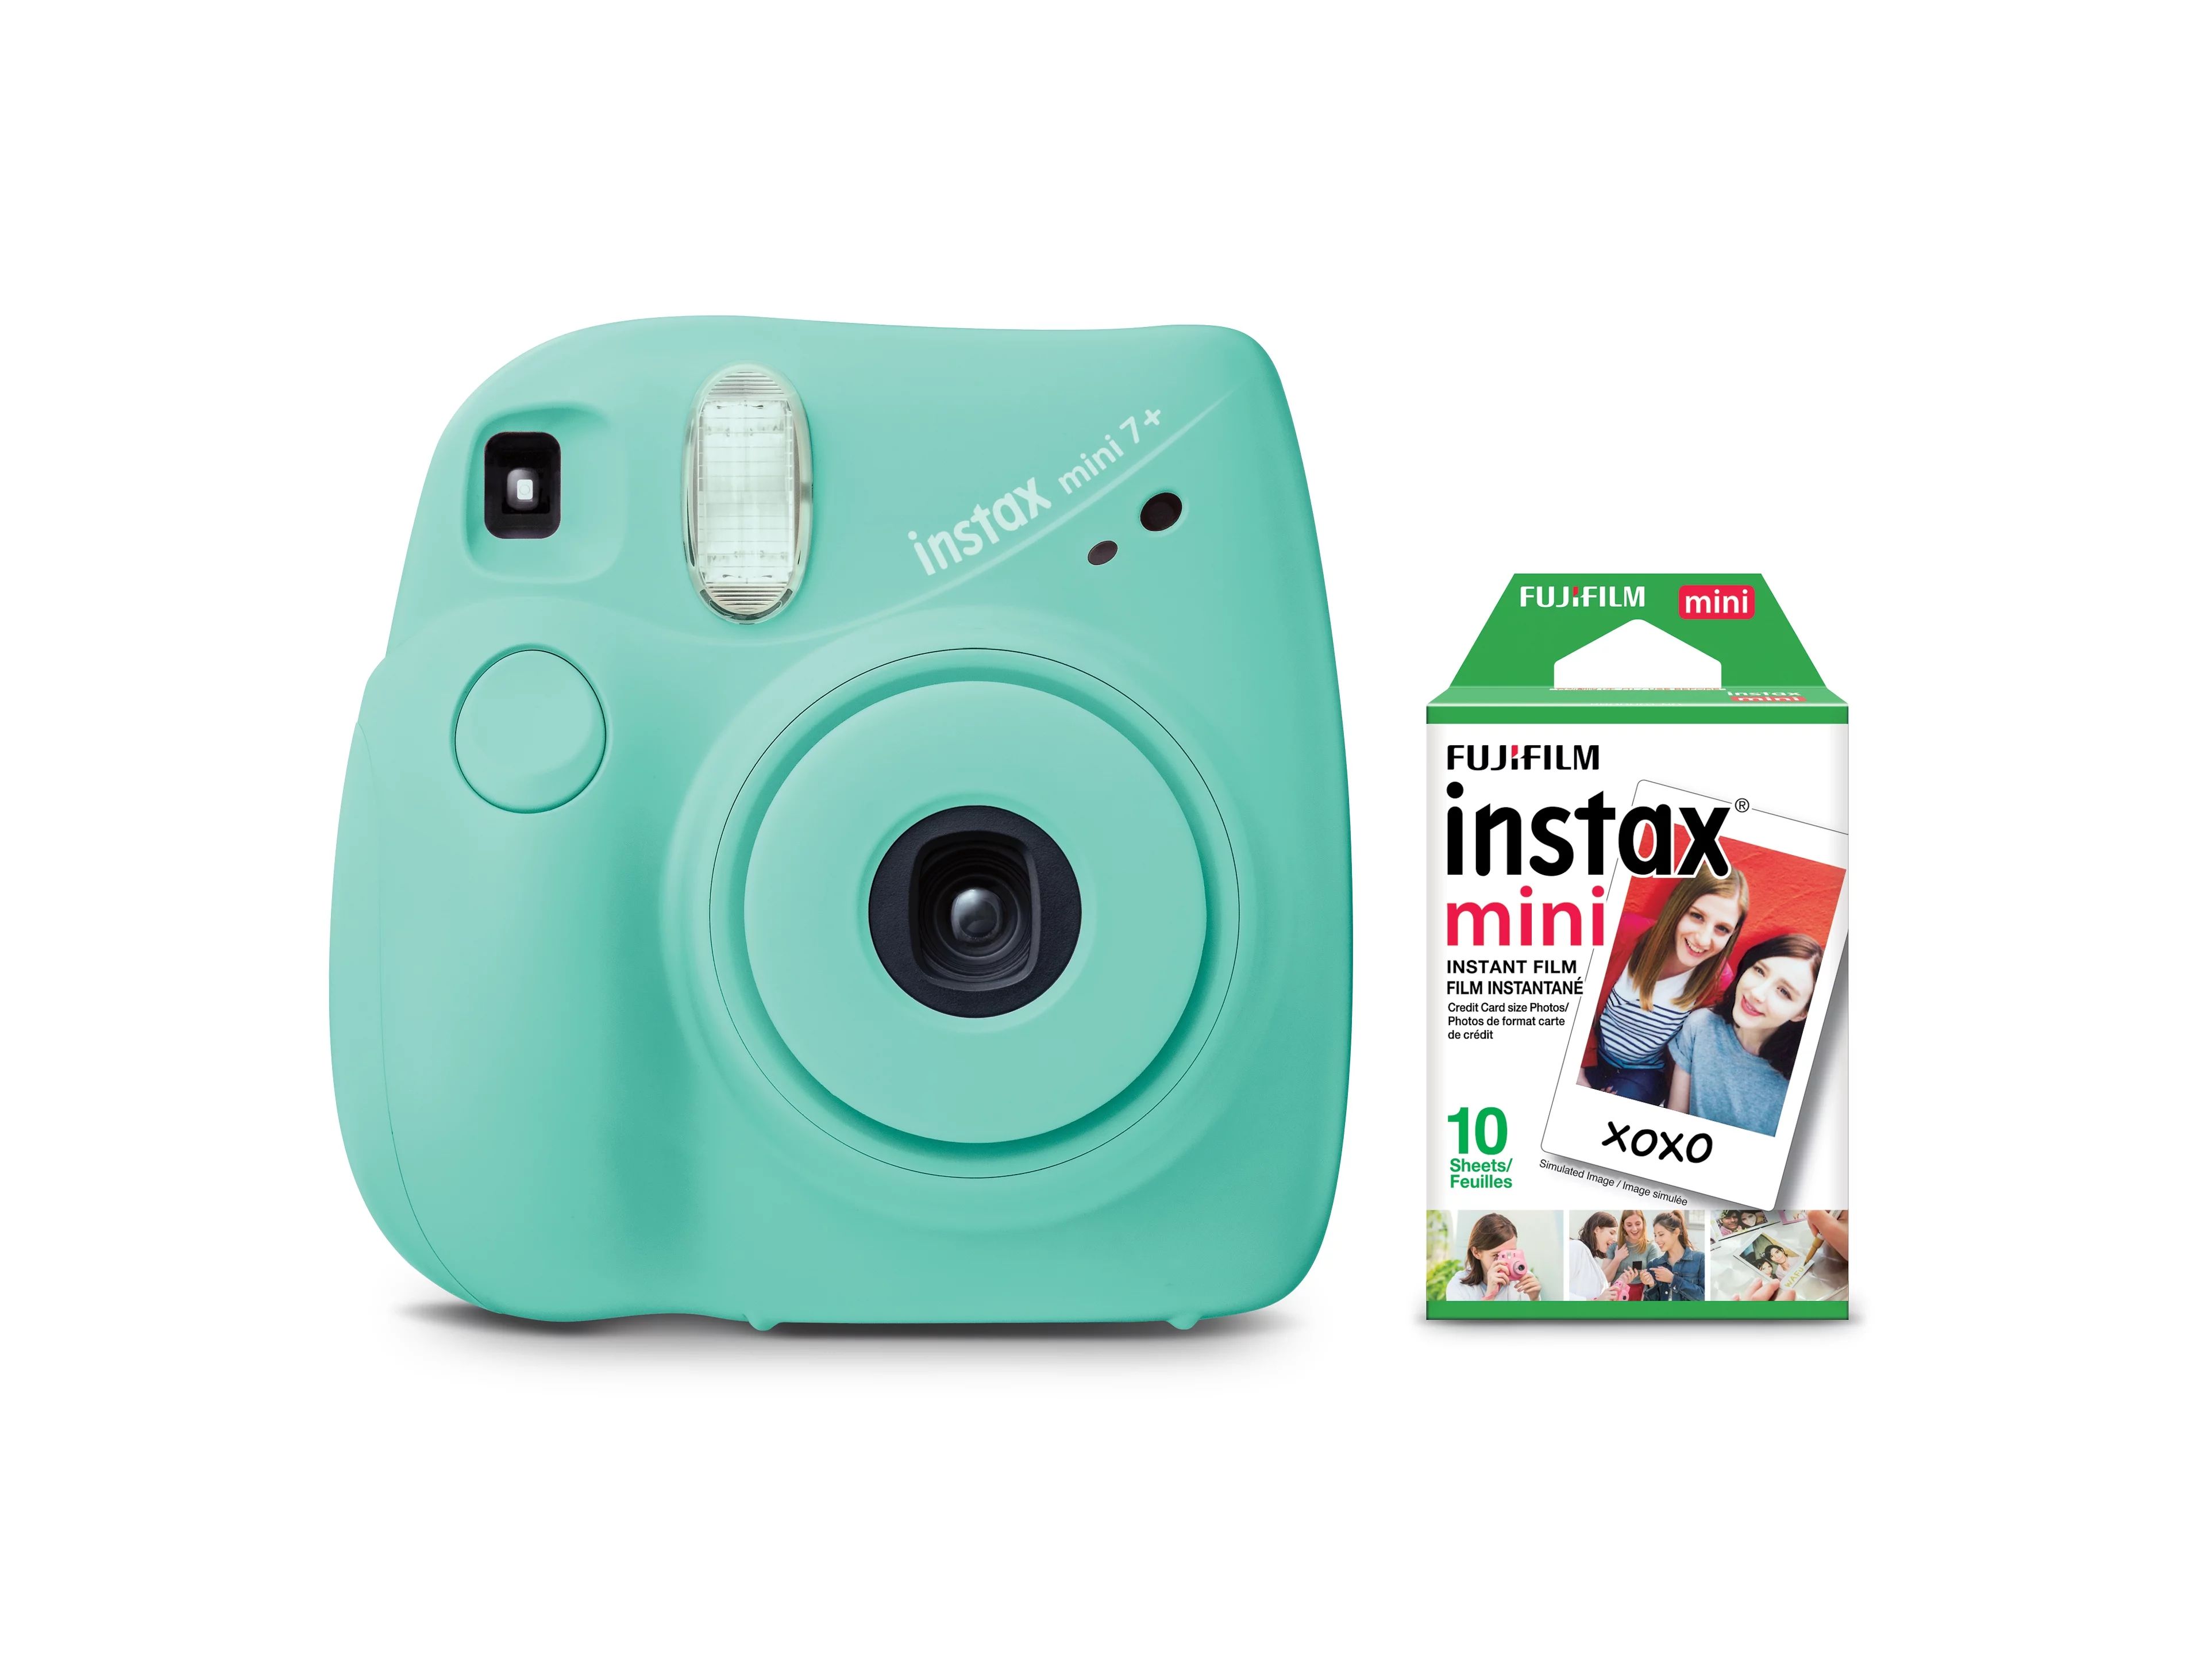 Fujifilm Instax Mini 7+ Camera - Seafoam Green | Walmart (US)